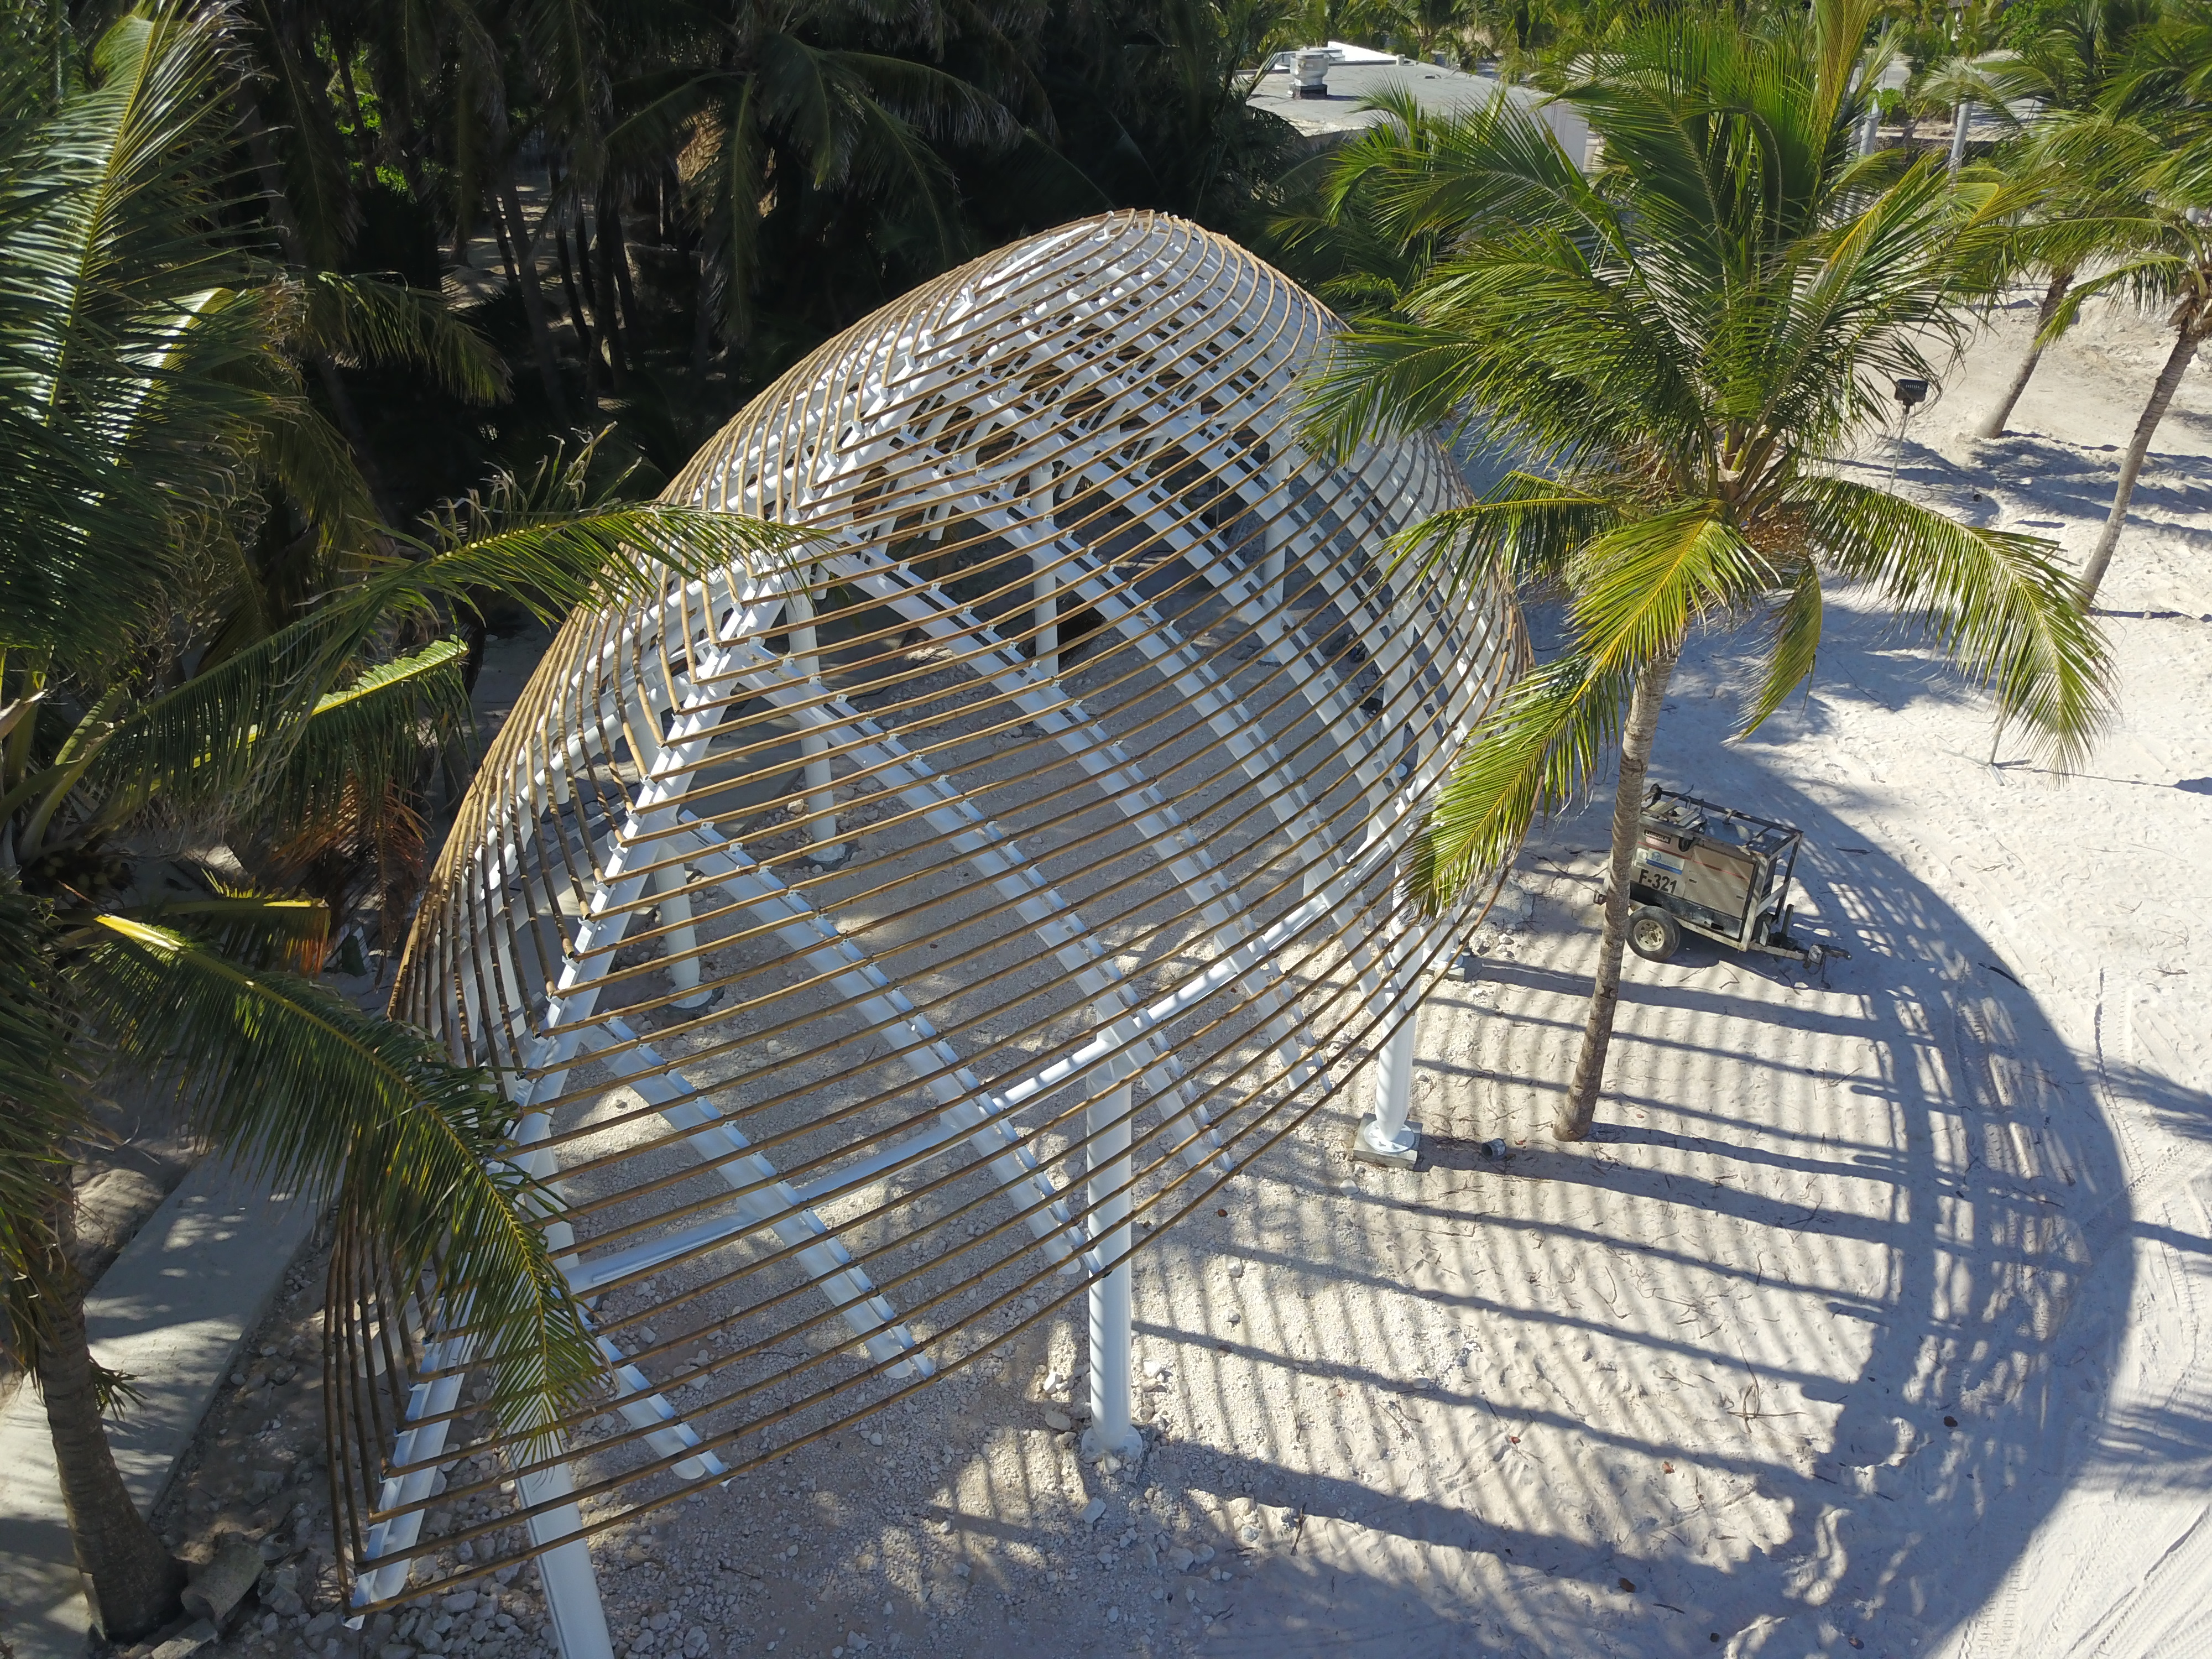 Playa Blanca Restaurant fue construido en estructuras metalicas, y la estructura posee recubrimientos especiales para proteger la pintura de la sal asi evitar la corrosion por su cercanía con la playa.